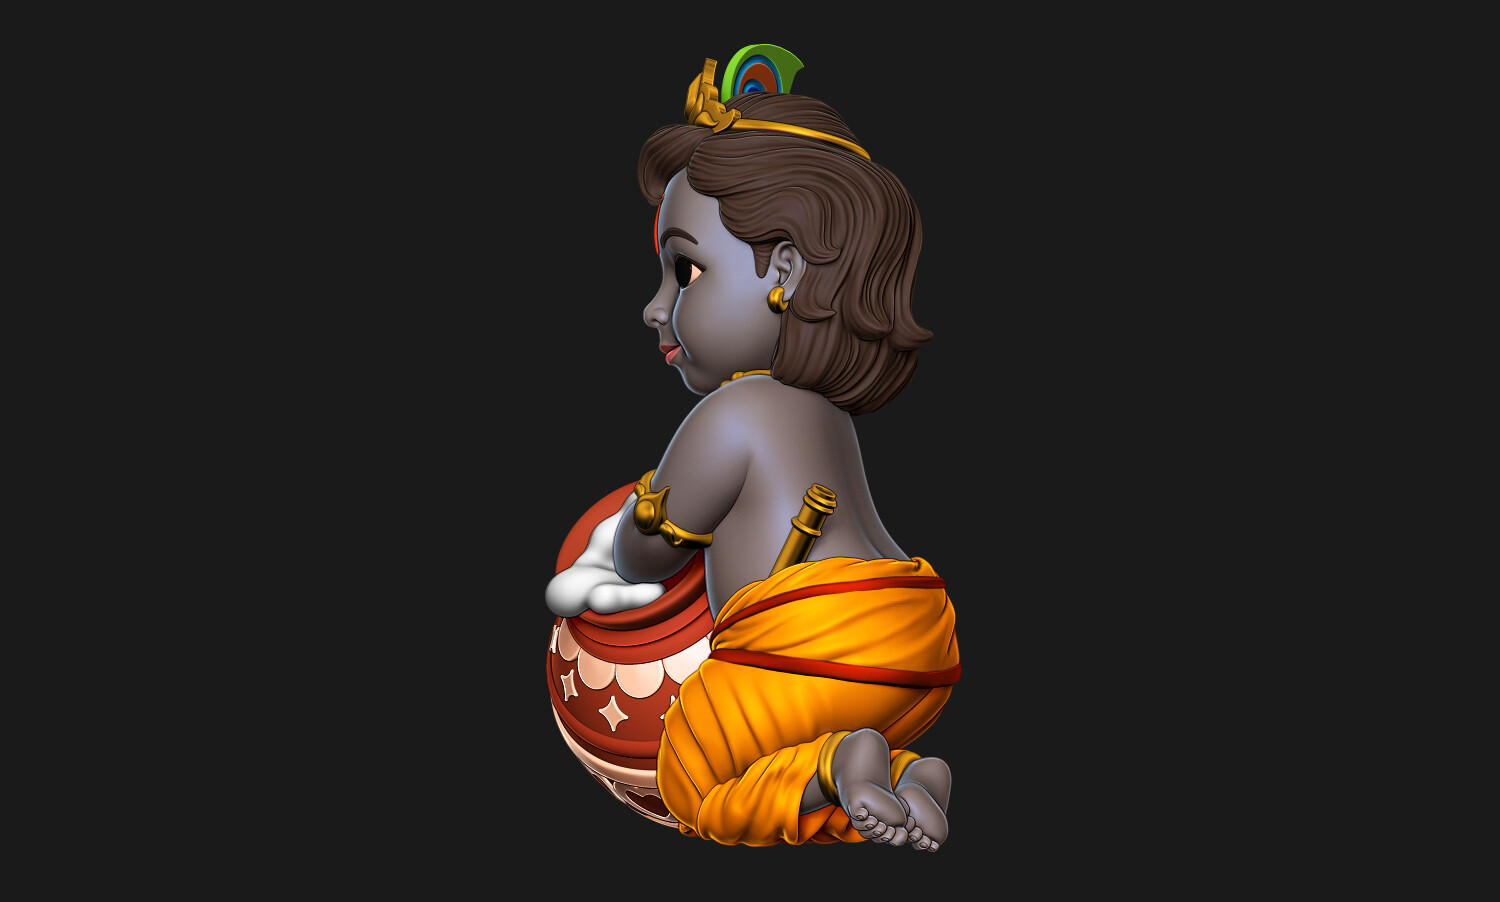 Little Krishna on Pinterest